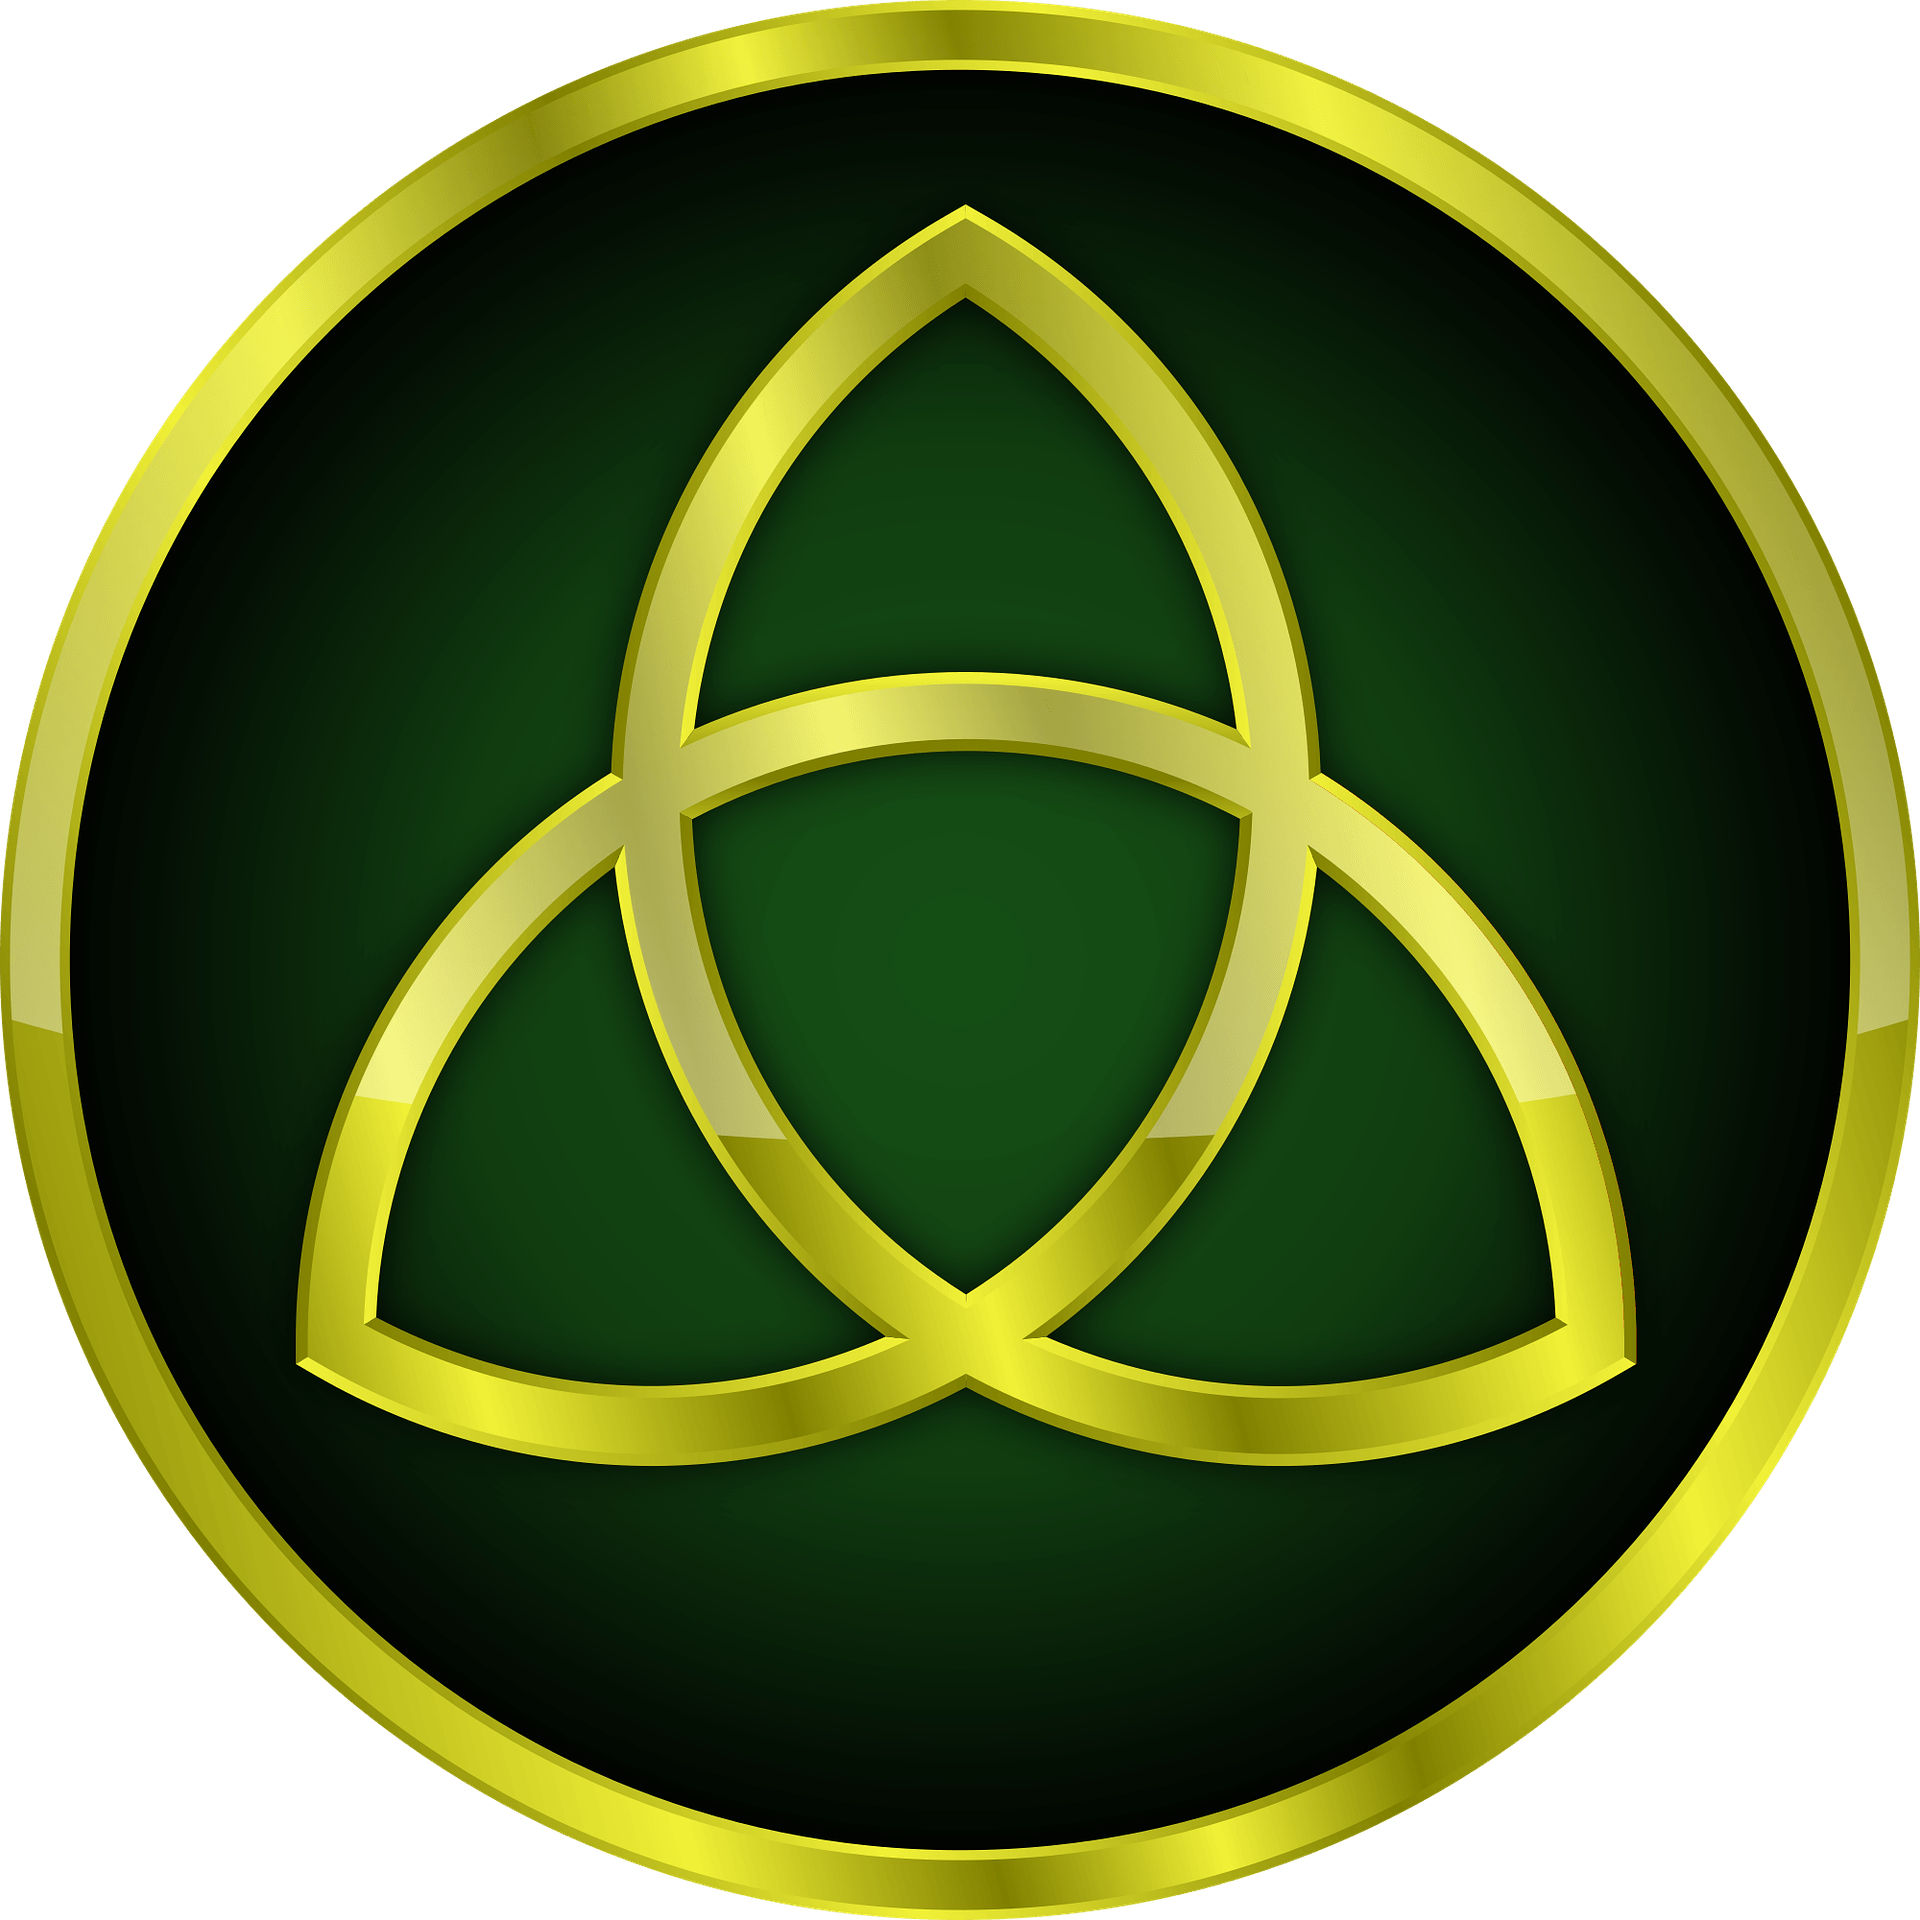 Trinity Symbol Logo - The Trinity Knot and its Many Meanings - Carrolls Irish Gifts